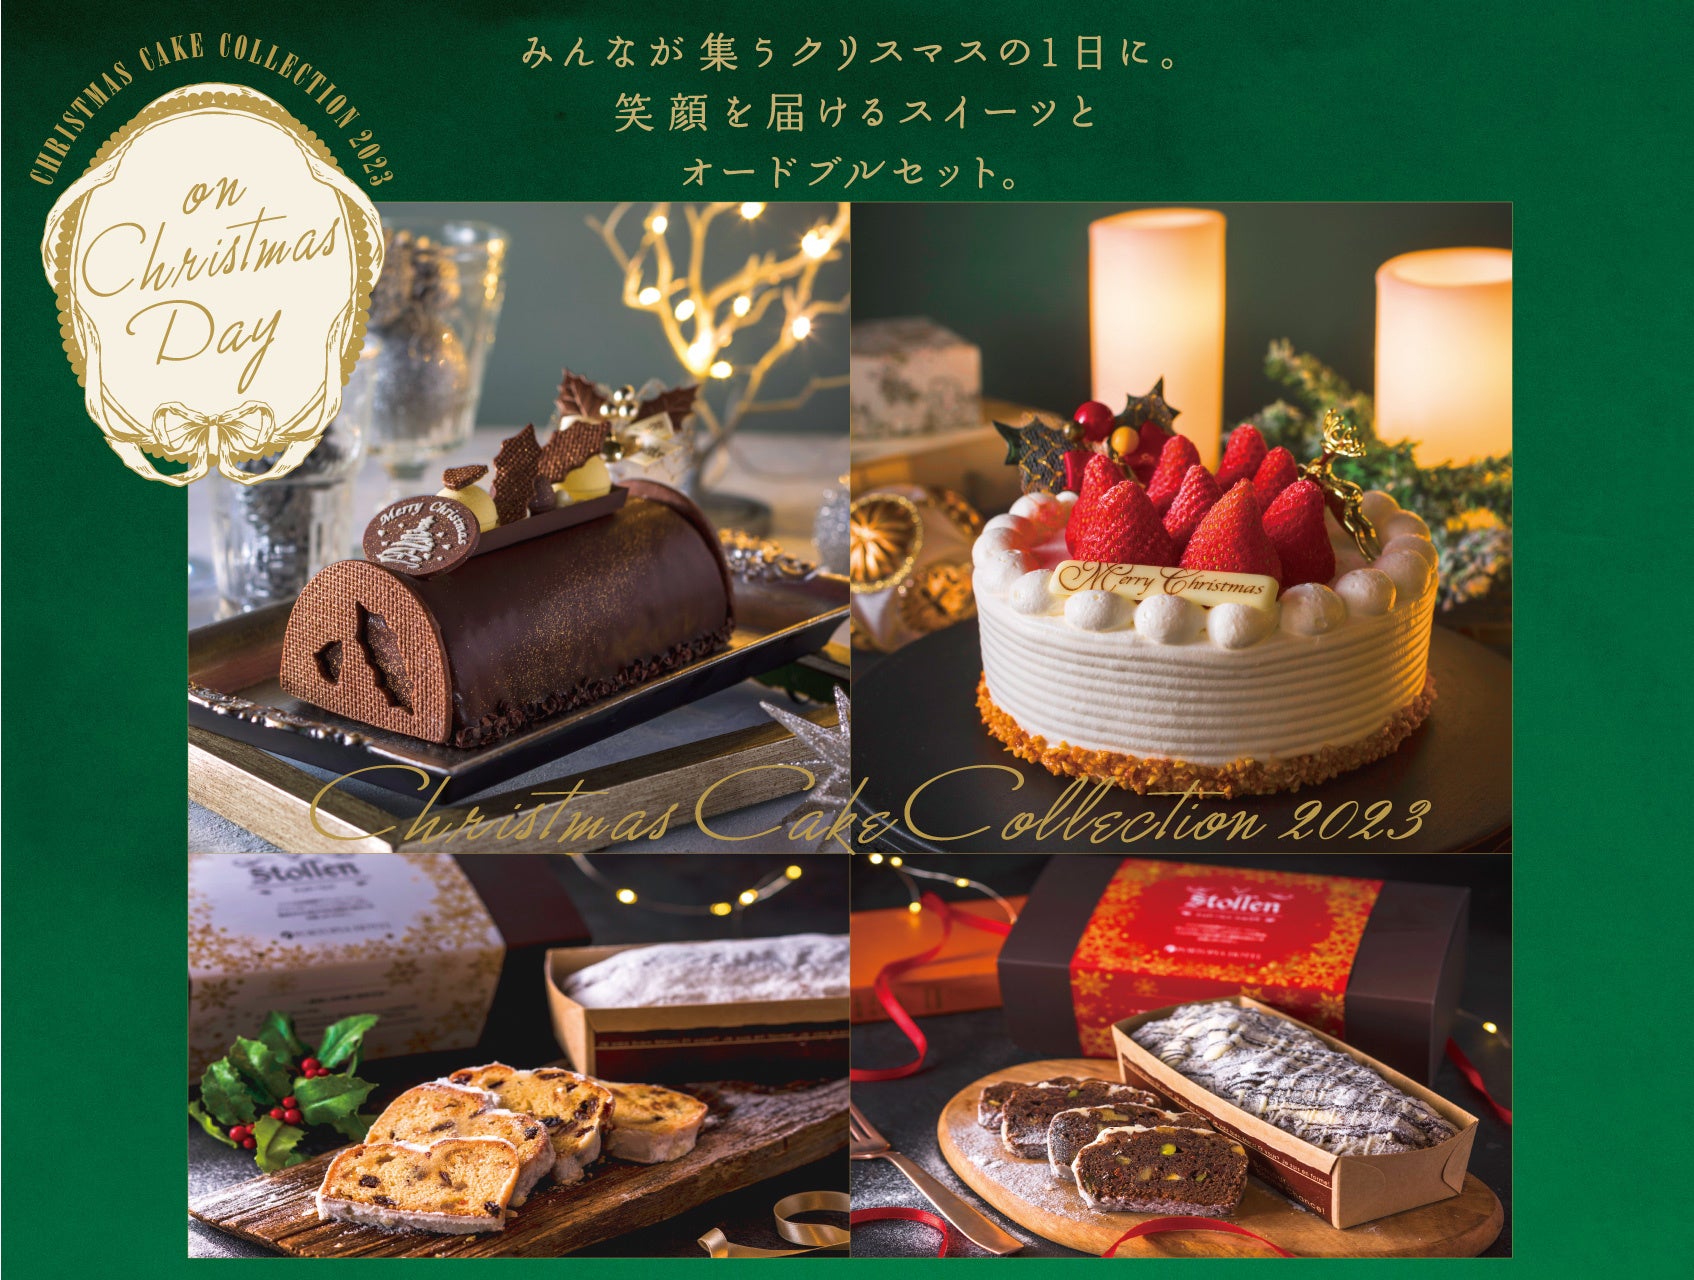 【神戸ポートピアホテル】クリスマスの食卓に華を添える、とっておきのクリスマスケーキとパーティセットが登場！